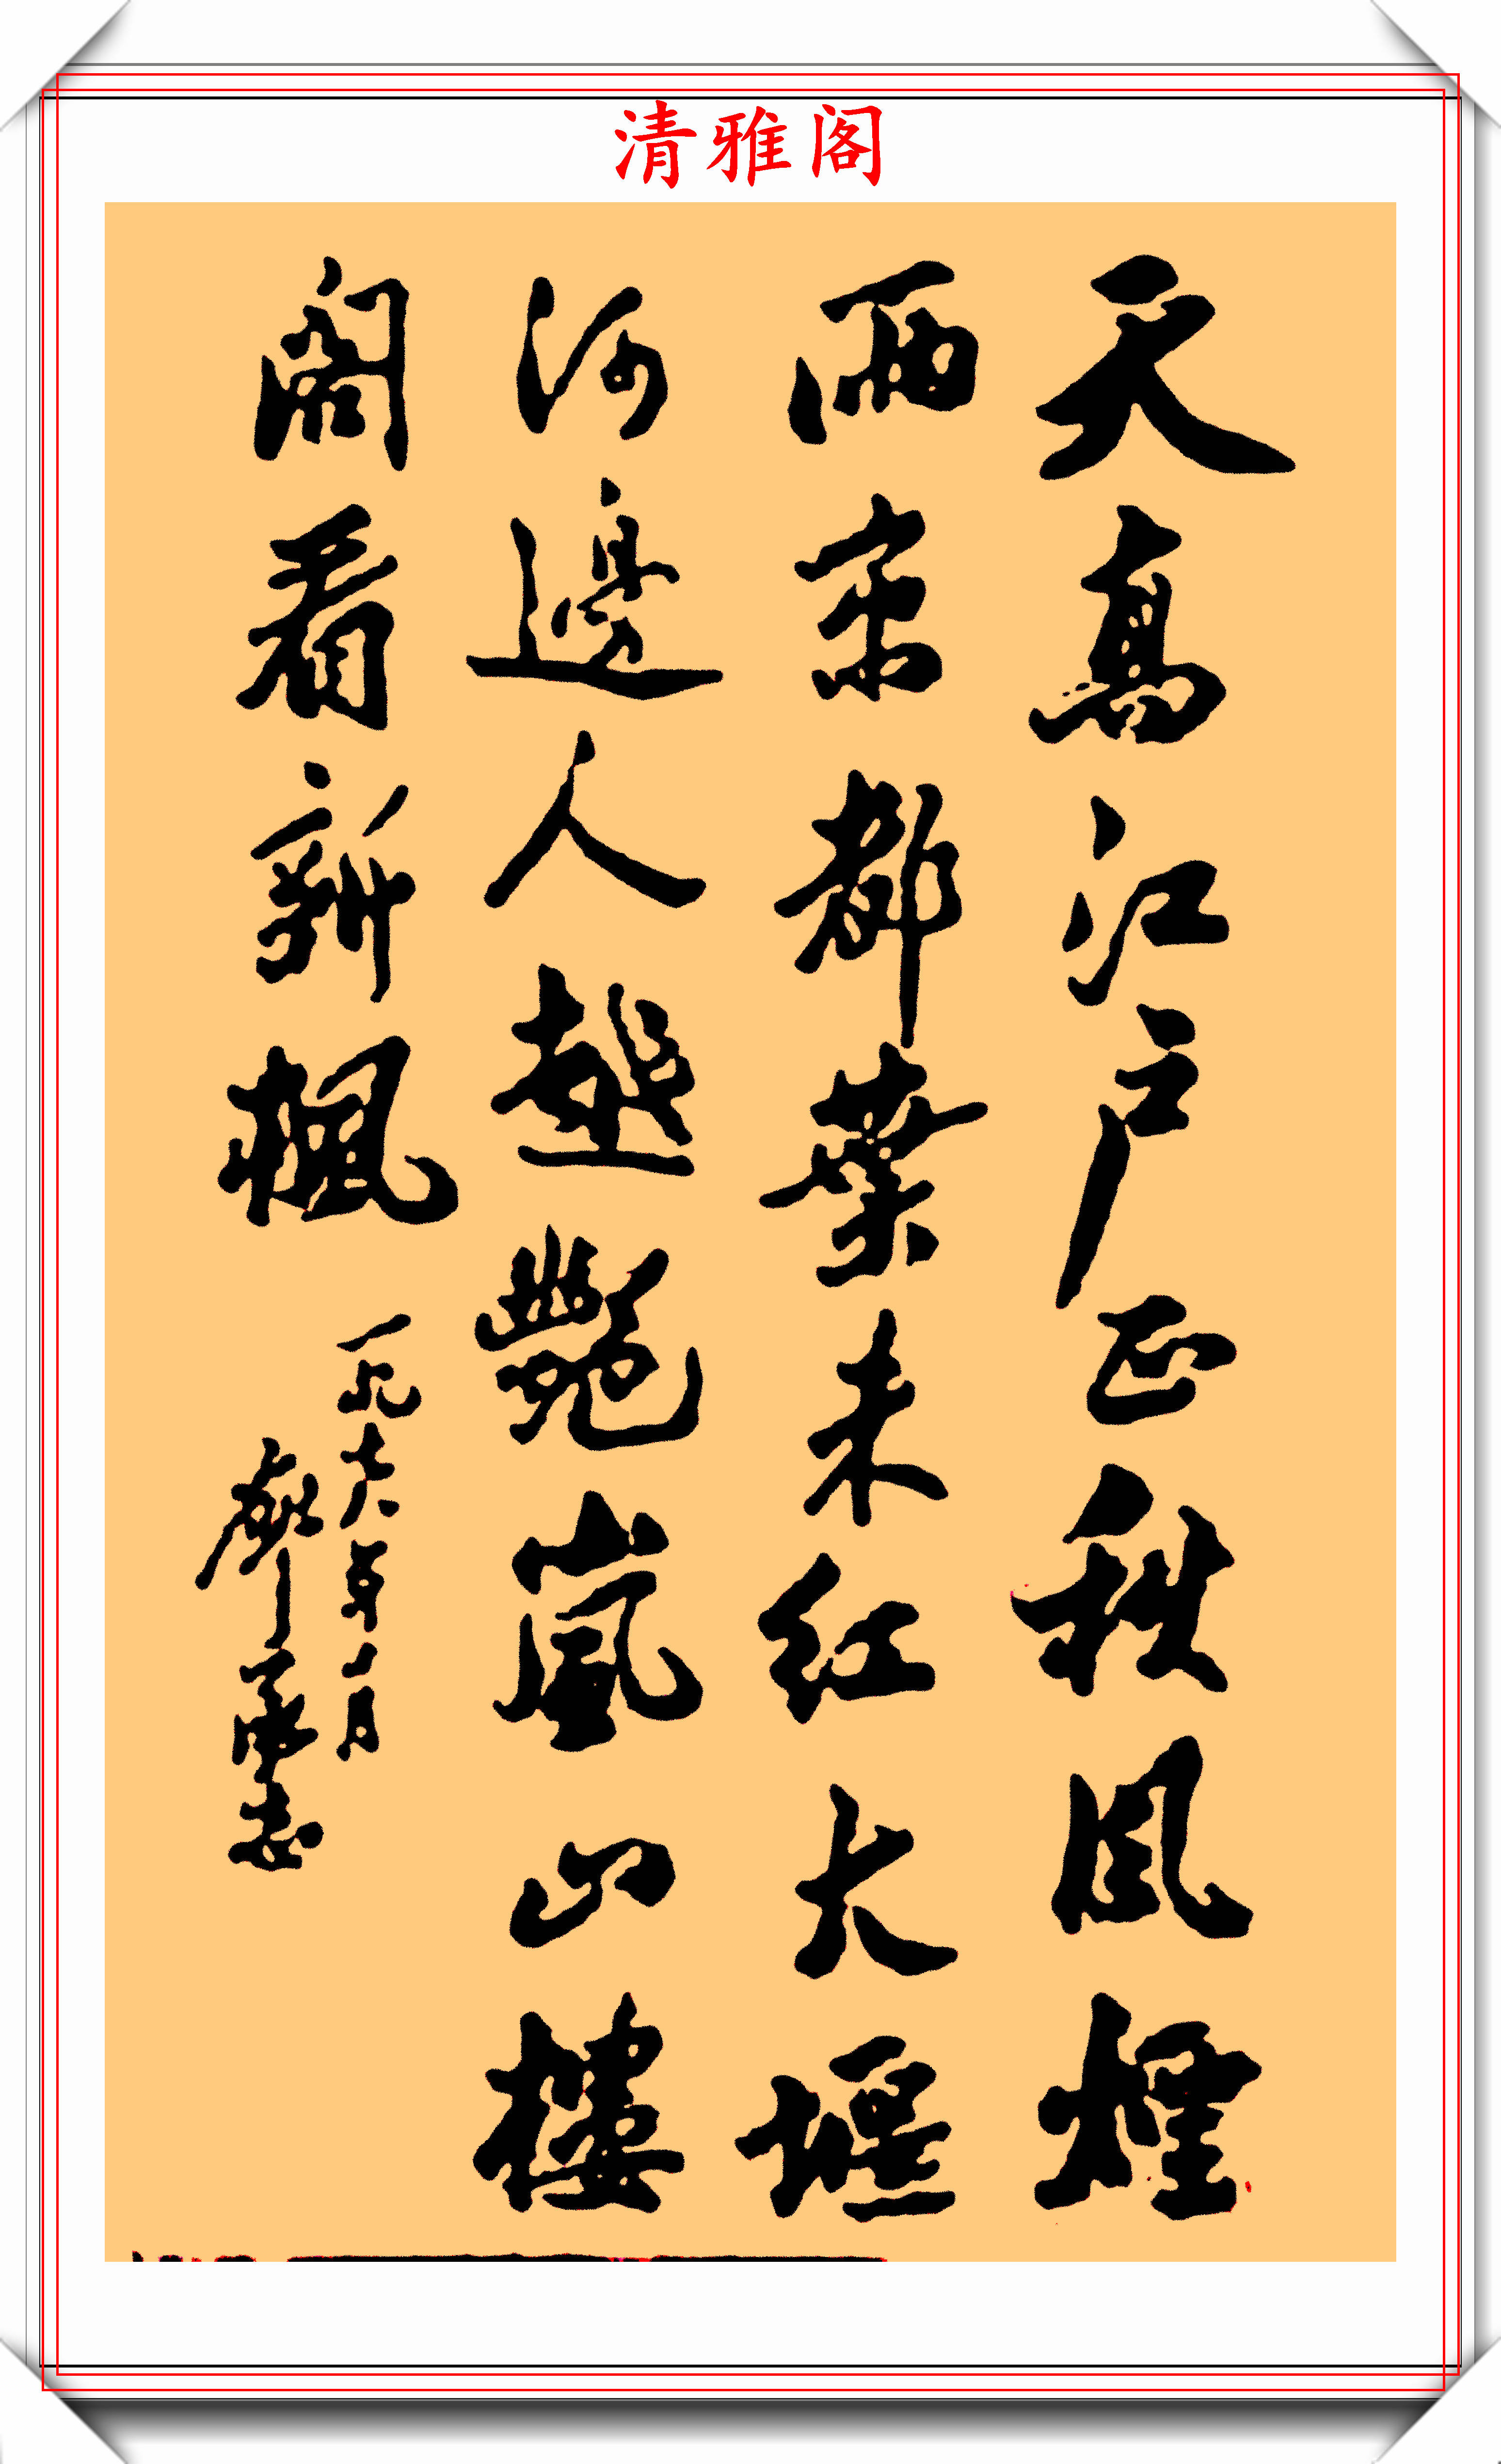 廖承志的10幅书法题字作品欣赏,笔力遒劲自然浑厚,字如其人也